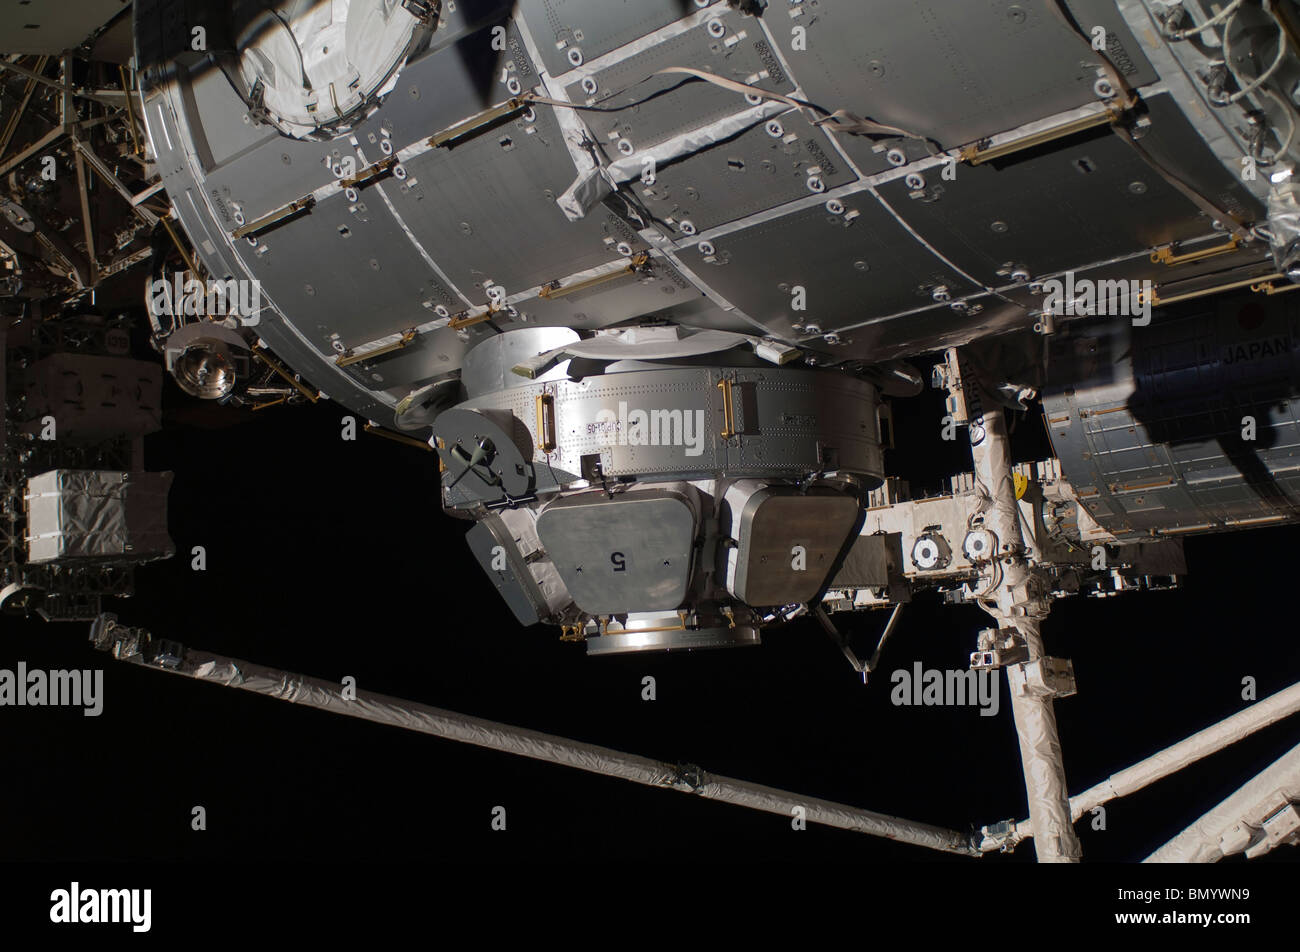 Febrero 17, 2010 - La tranquilidad de la Estación Espacial Internacional nodo y su cúpula. Foto de stock